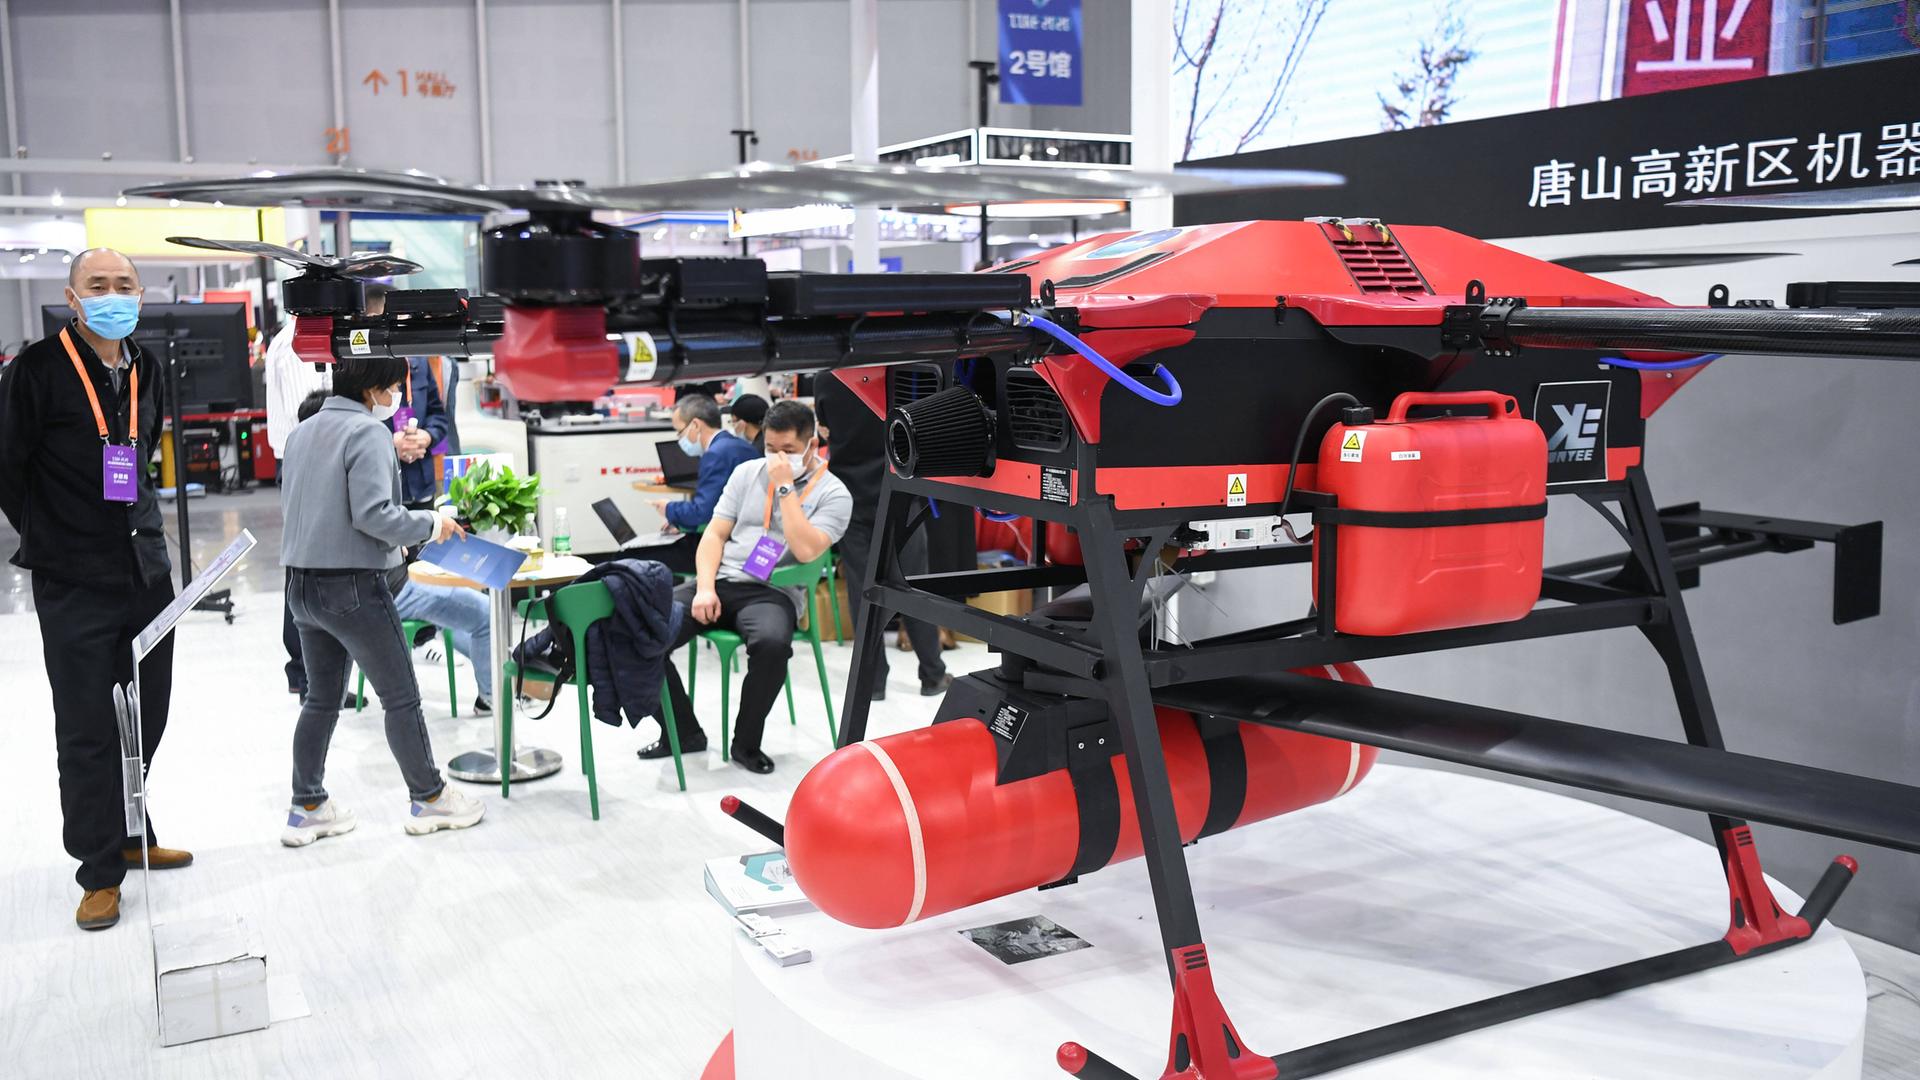 Eine Hybrid betriebene Drohne steht auf der Messe International Intelligent Robot Expo 2020 in Foshan, China